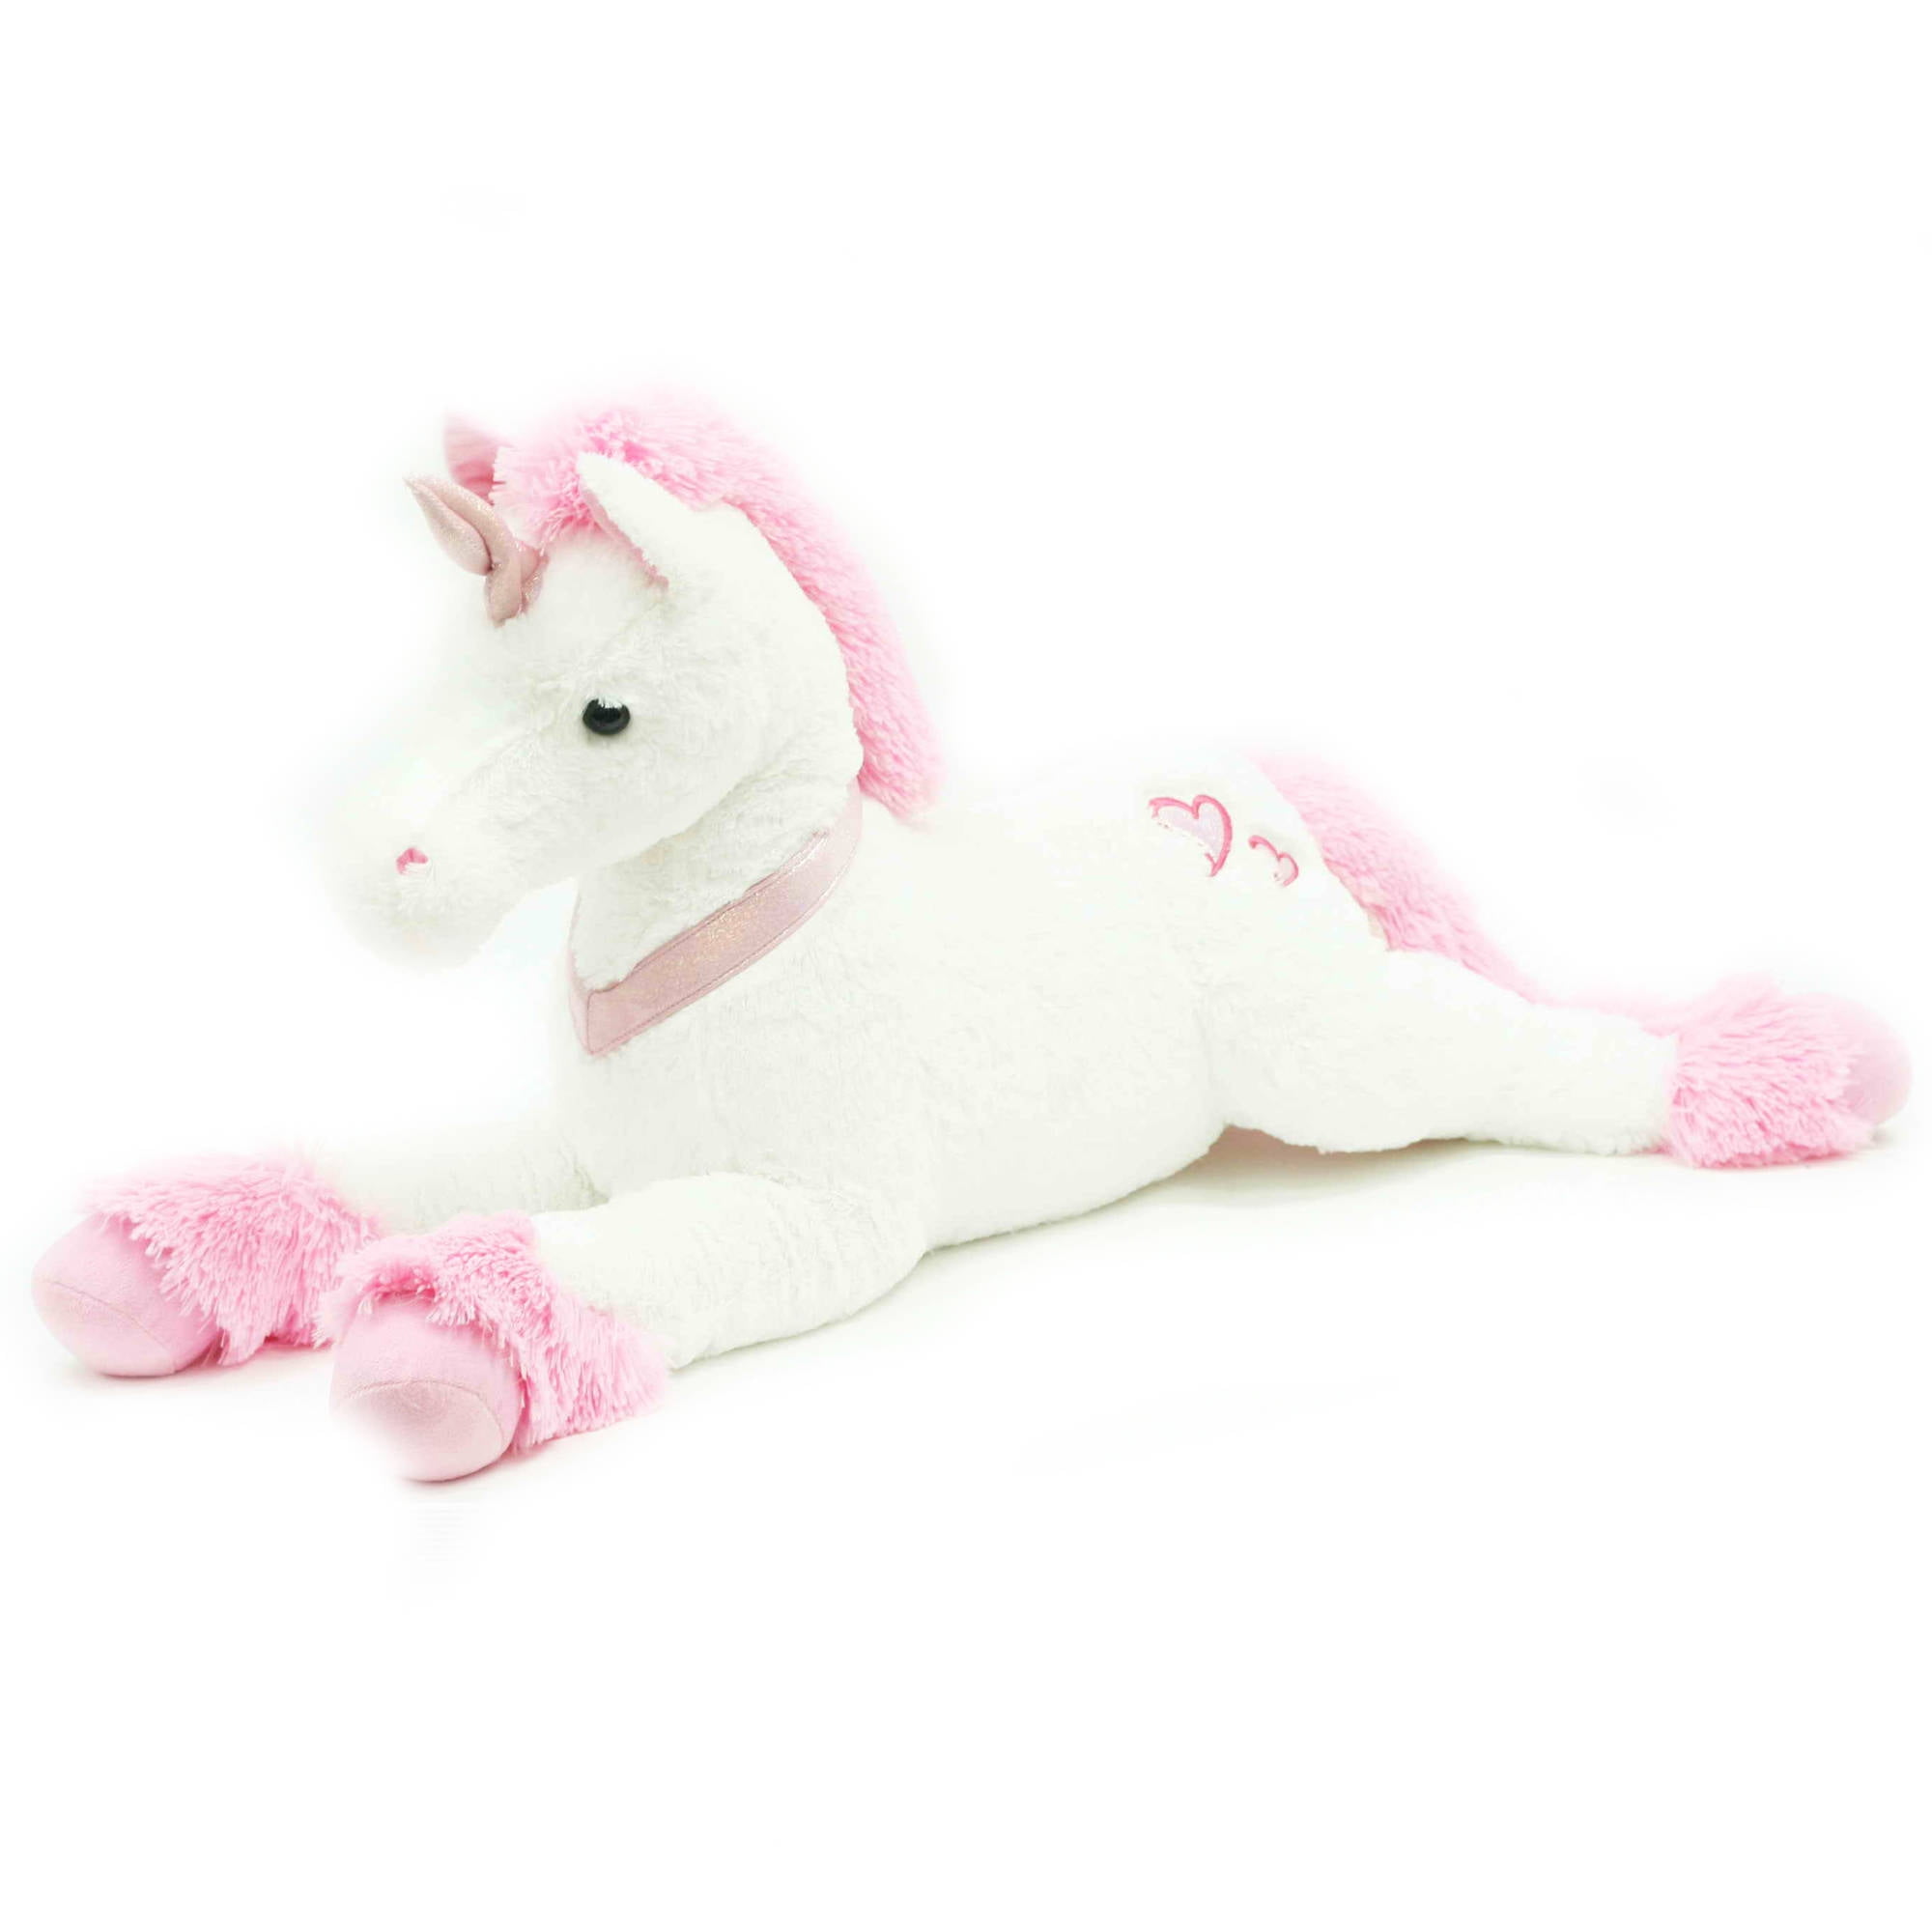 big unicorn stuffed animal walmart